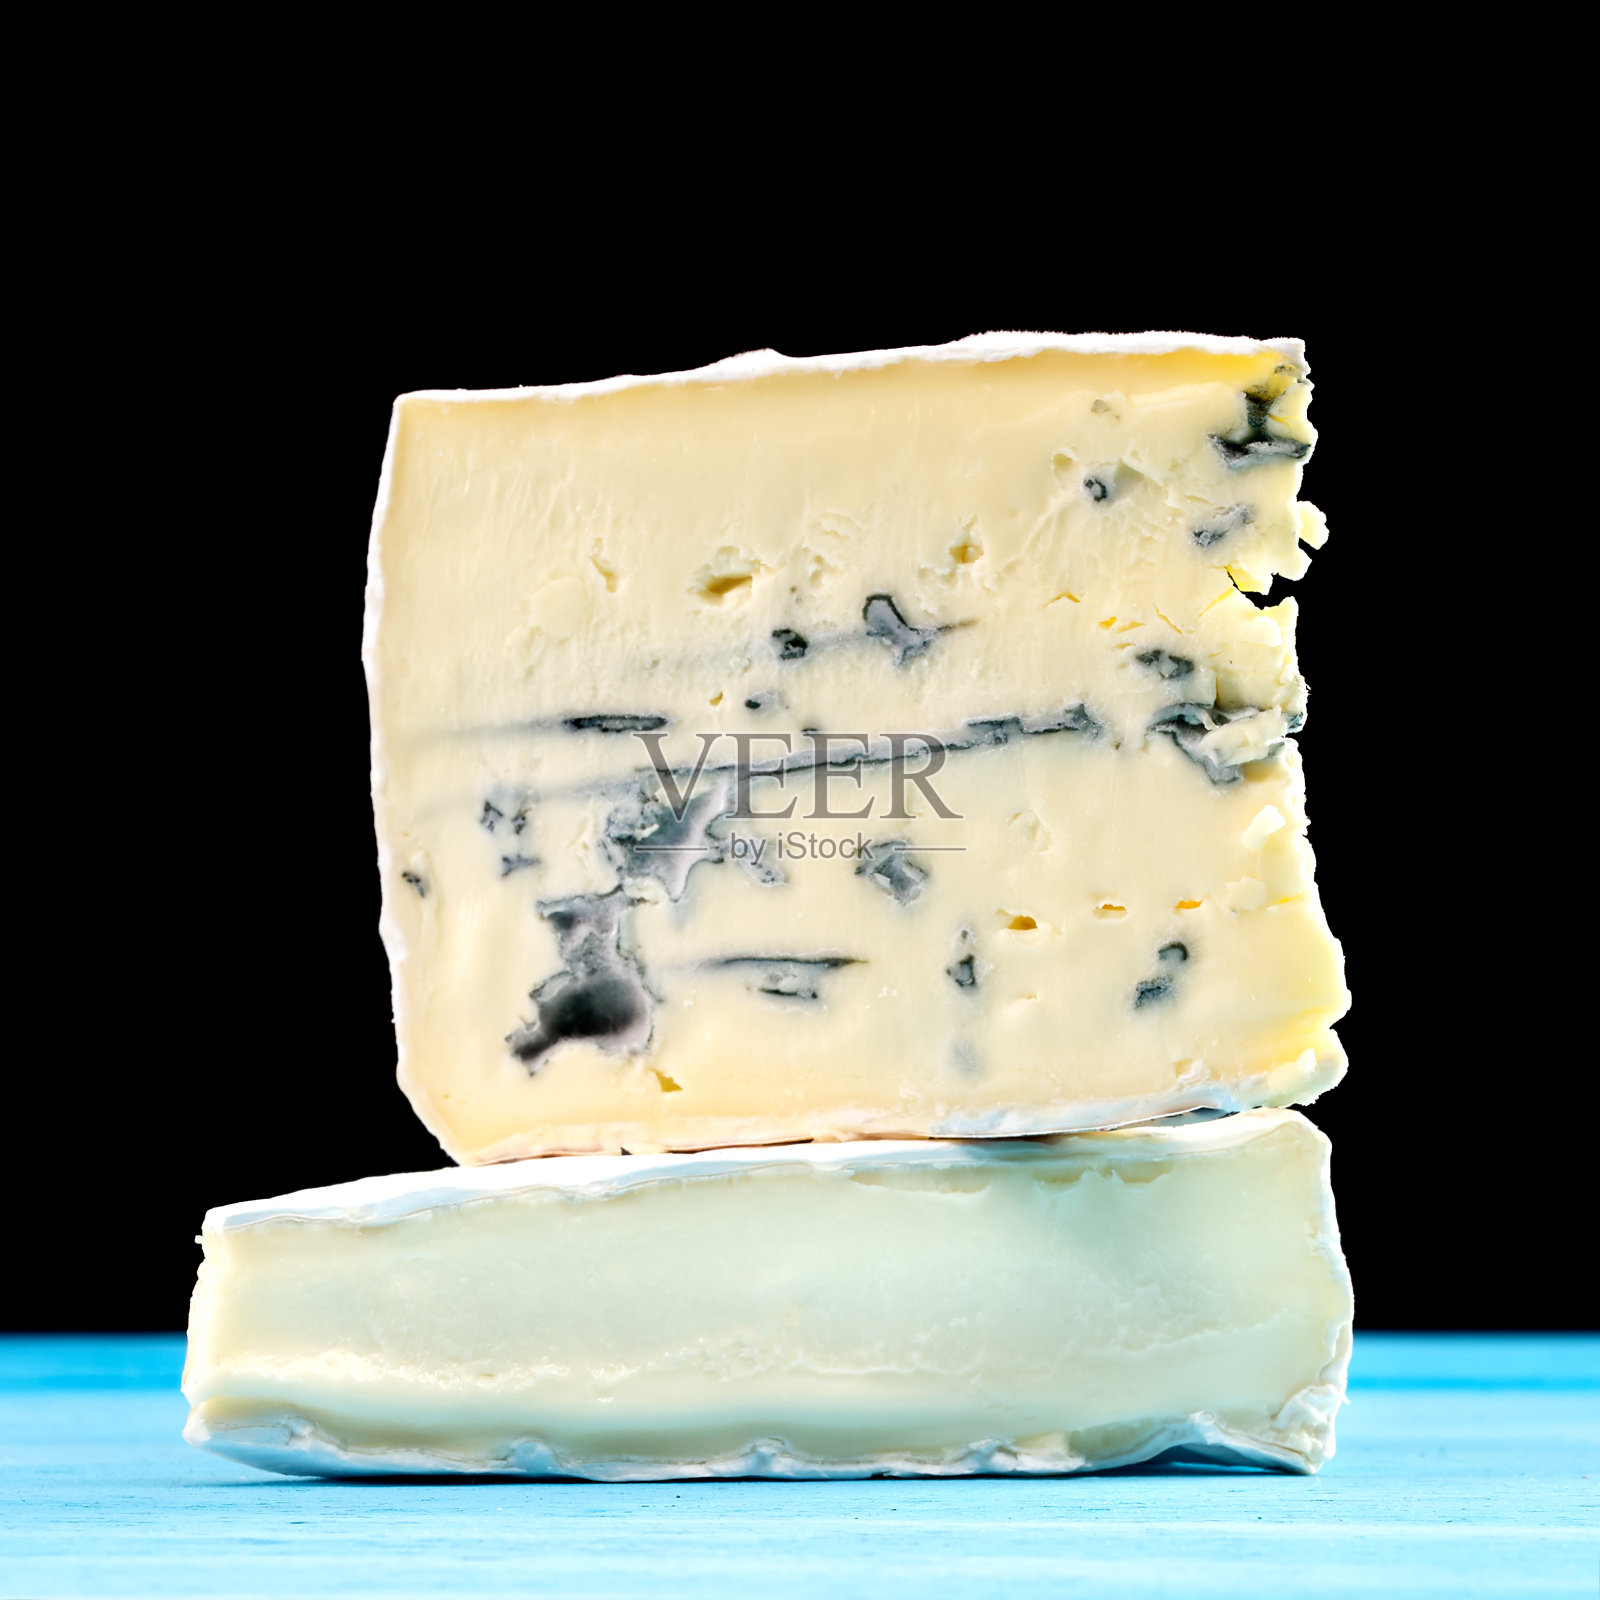 蒙塔尼奥罗仿大理石奶酪的横截面照片摄影图片